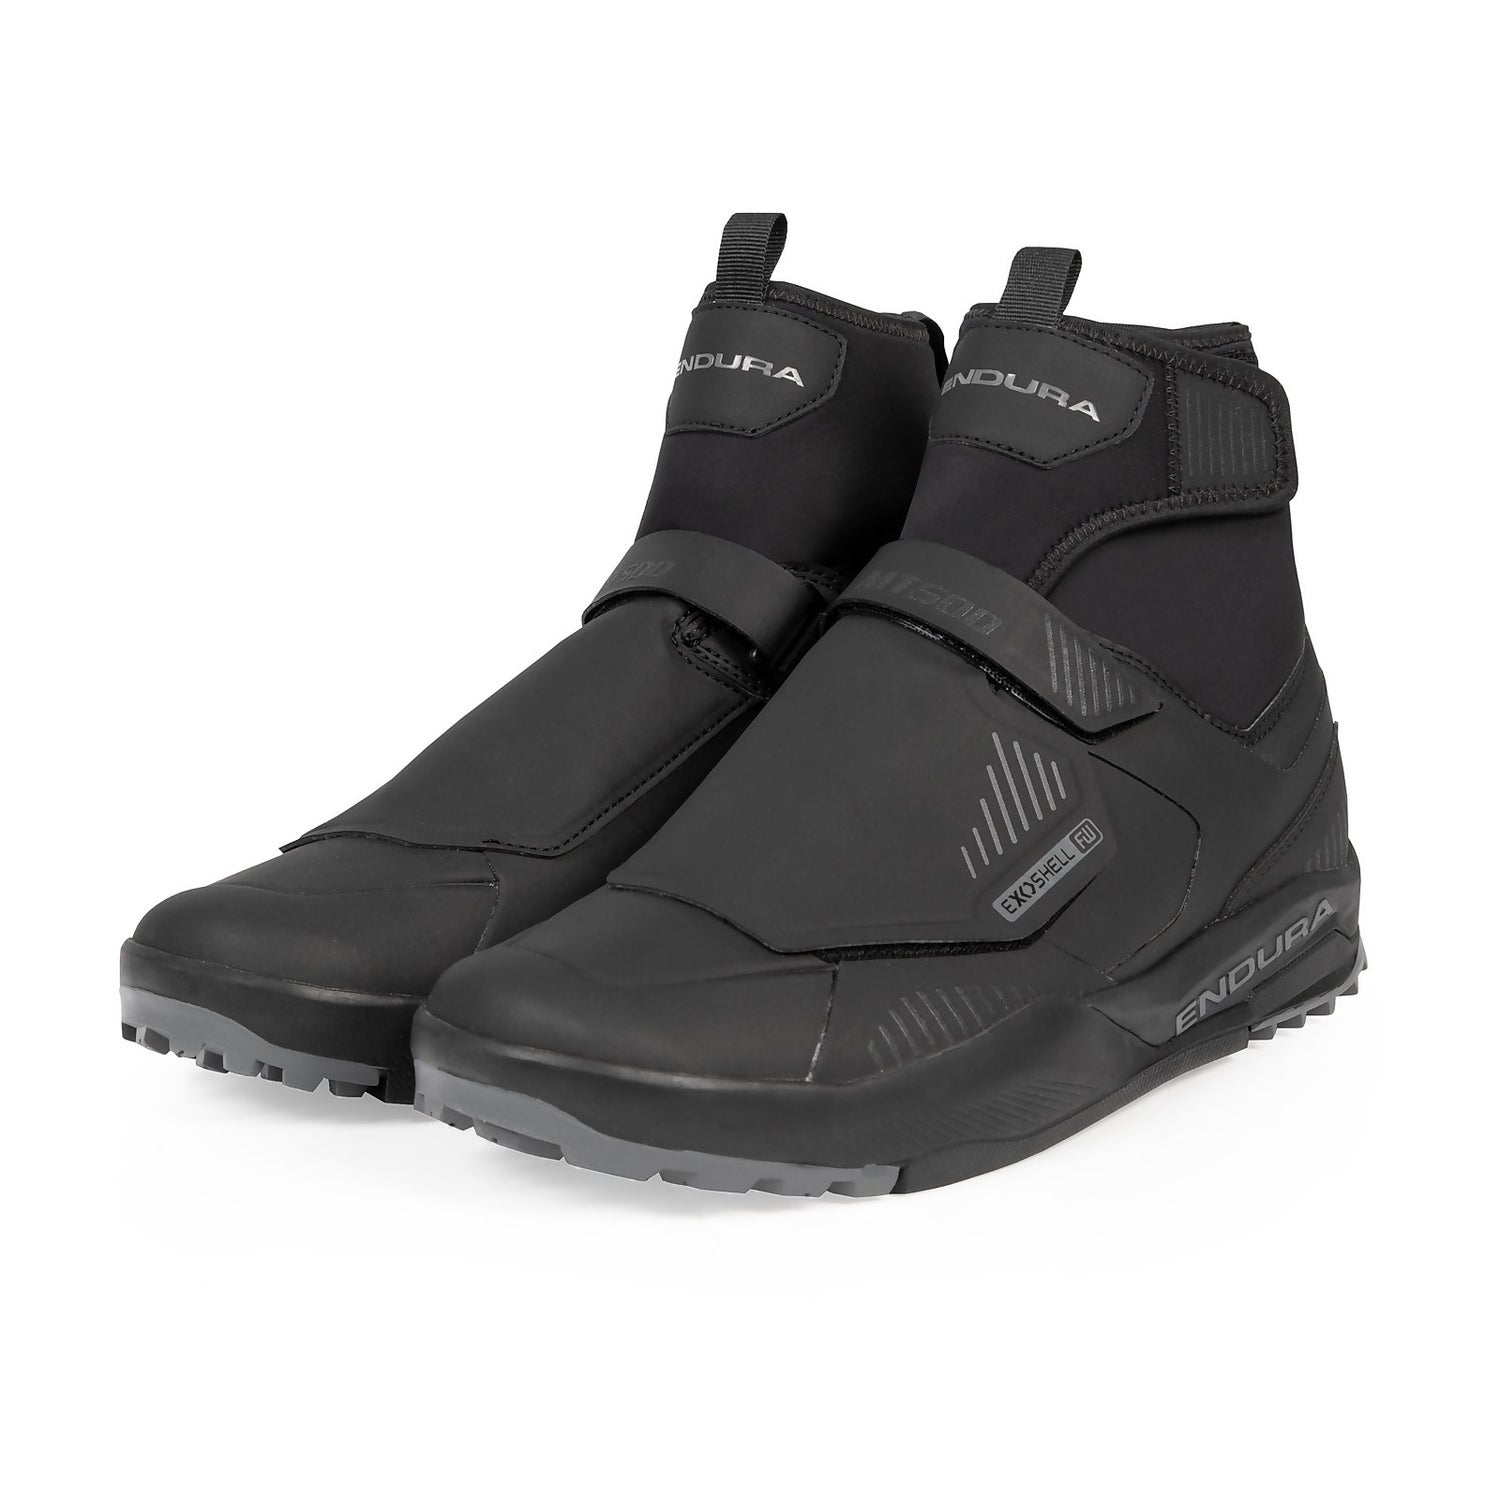 Chaussures MT500 Burner imperméables pour pédales plates - Noir